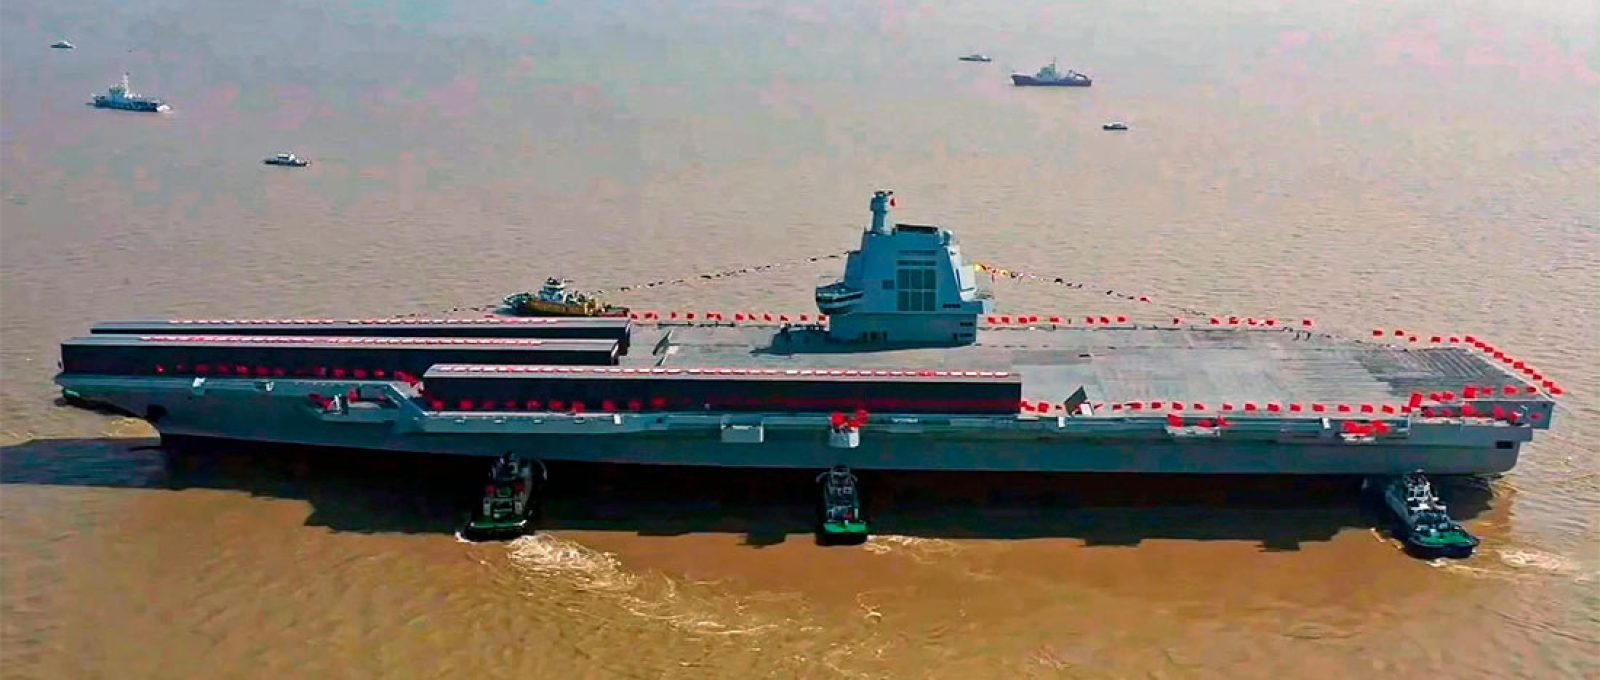 O Fujian, o terceiro porta-aviões da China até à data, aguarda testes no mar (Weibo).